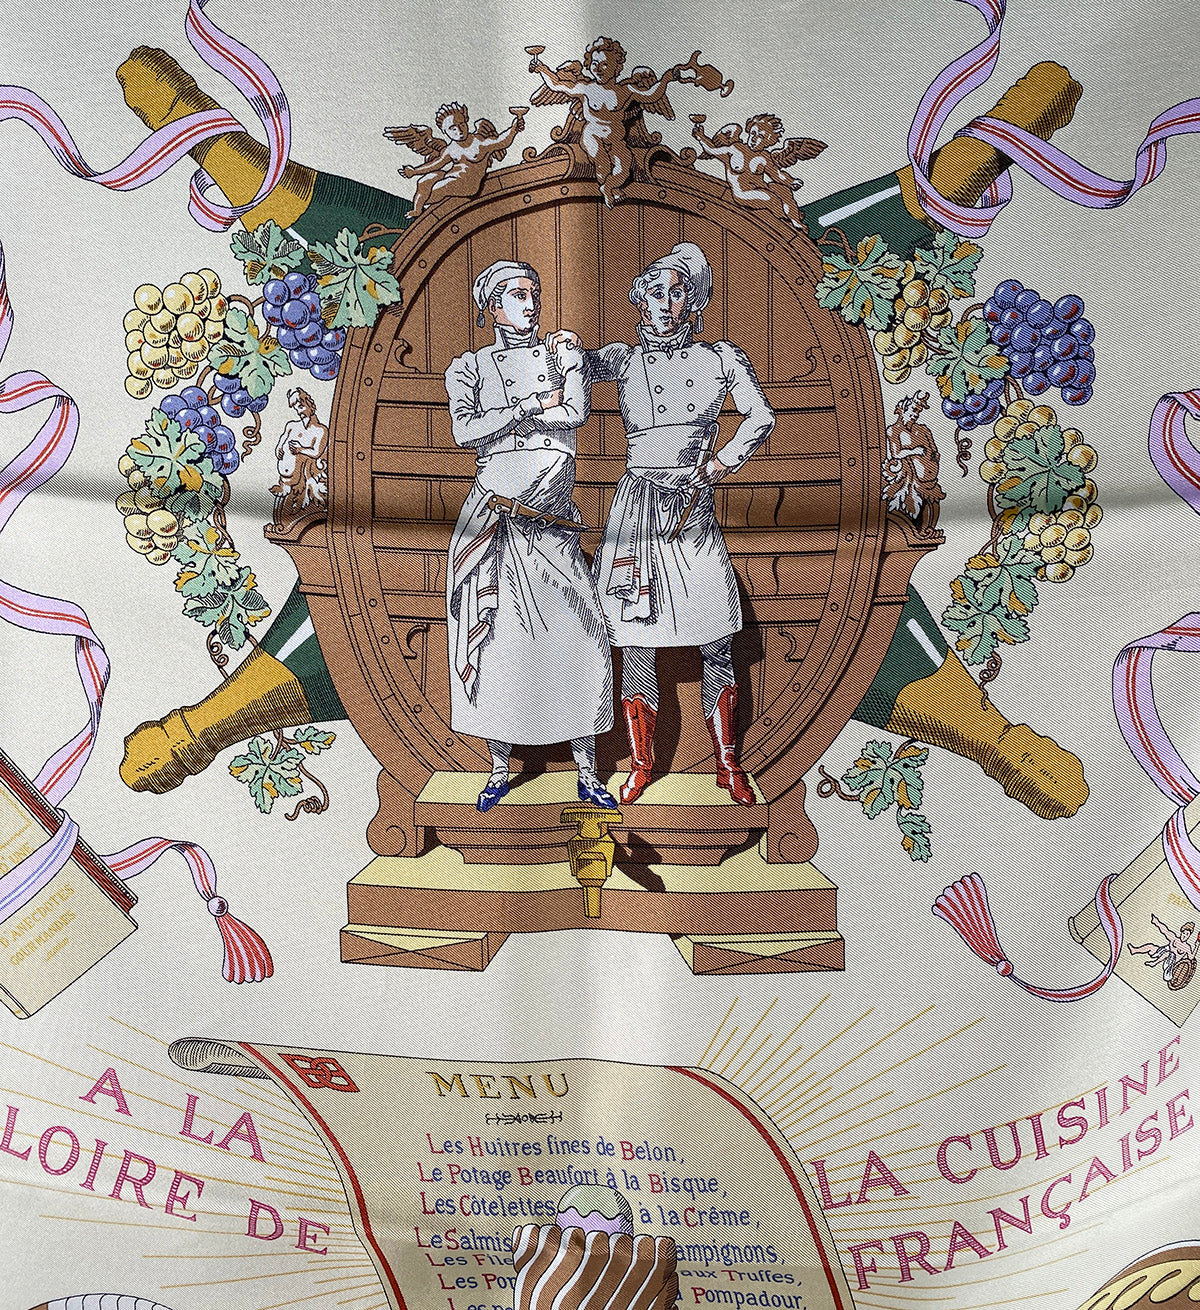 "A La Loire La Cuisine Française" Hermés 70 cm silk scarf in box, the artist's work c. 1948 by Robert Dumas